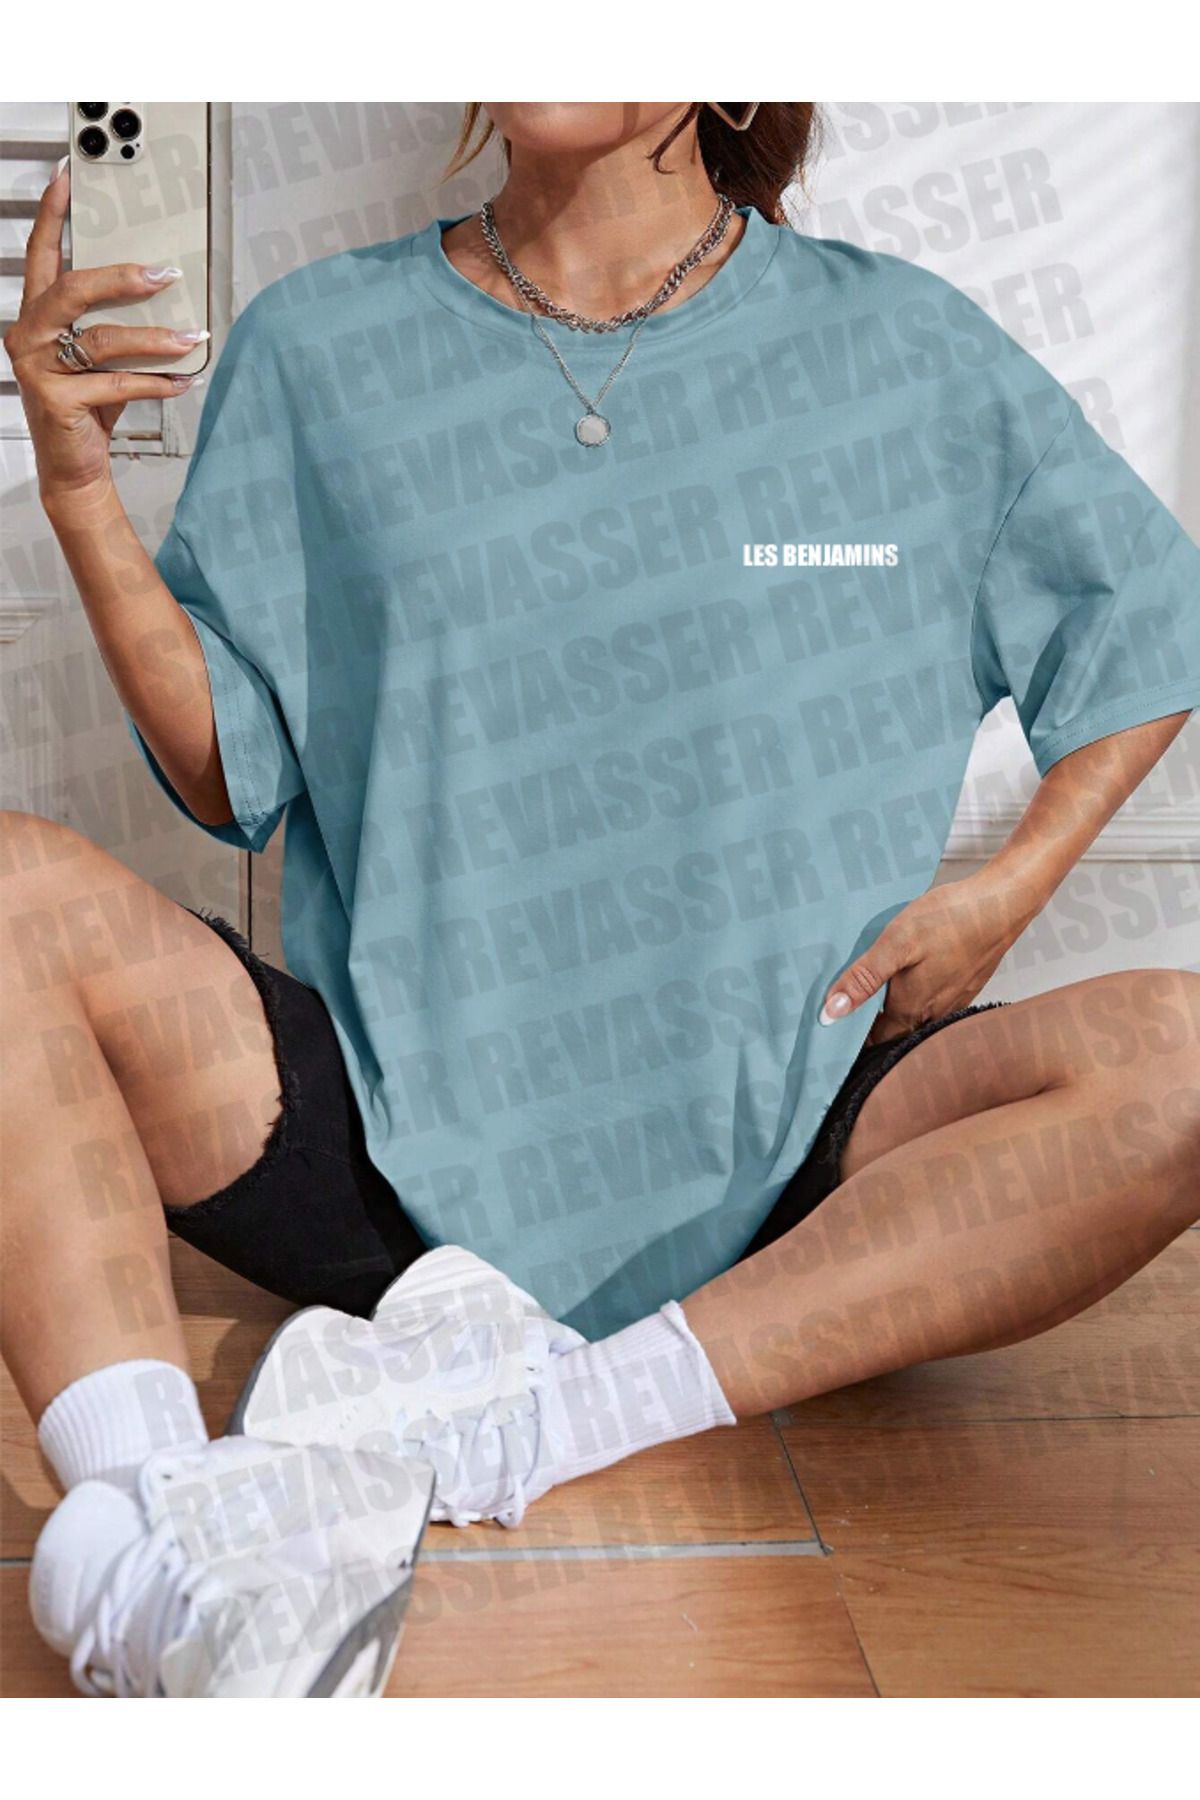 oneagılyazı Unisex Kadın/Erkek LESBENJAMINS Renkli Özel Baskılı Oversize Pamuk Penye T-Shirt